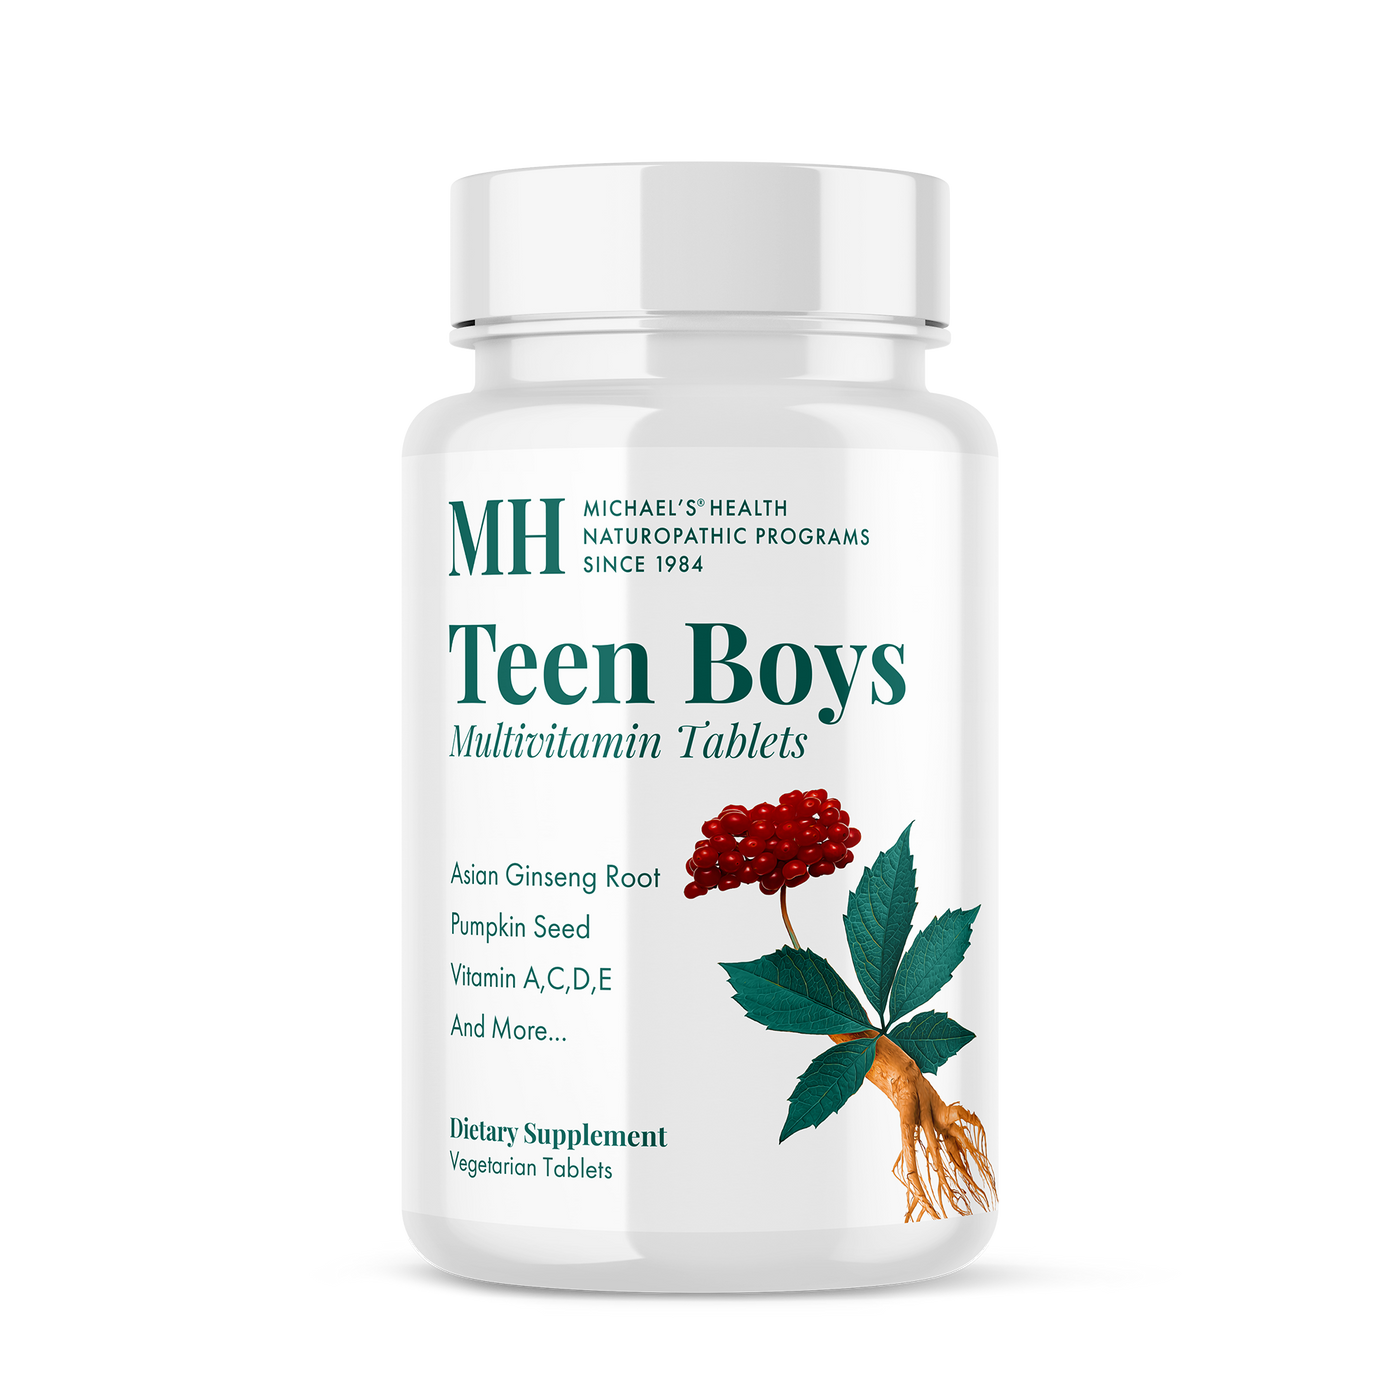 Teen Boys Multivitamin Tablets